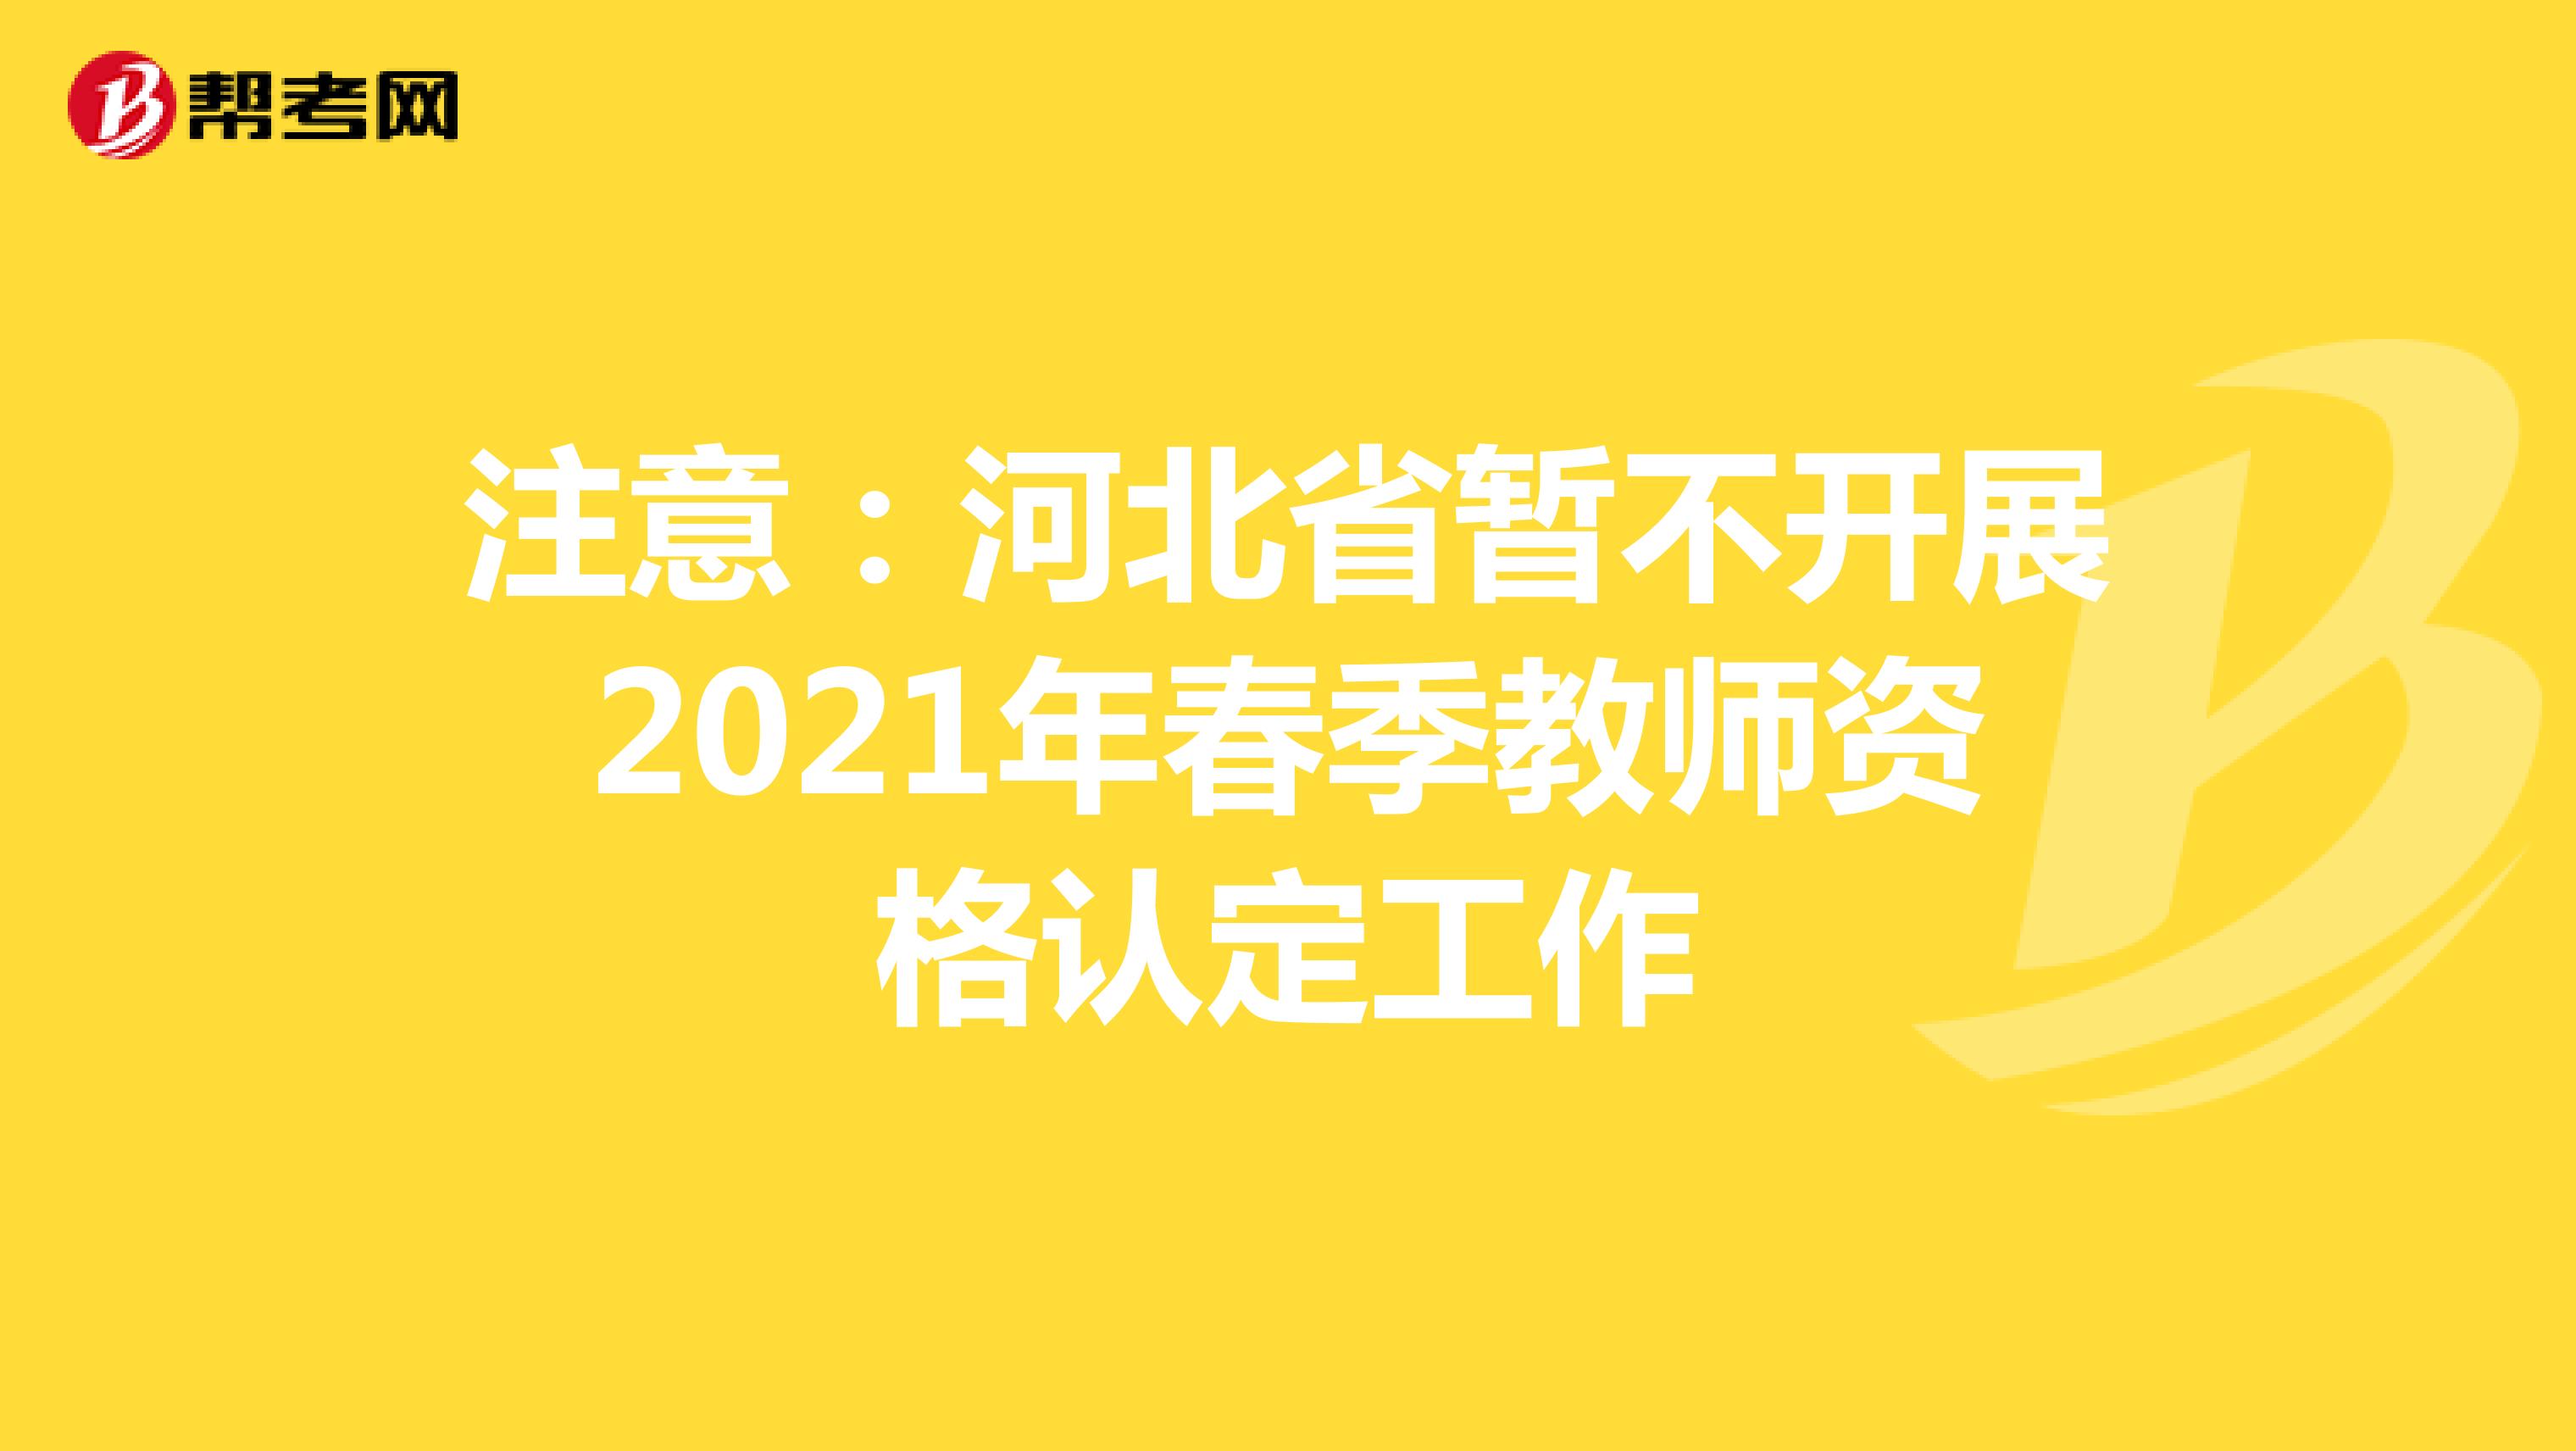 注意：河北省暂不开展2021年春季教师资格认定工作